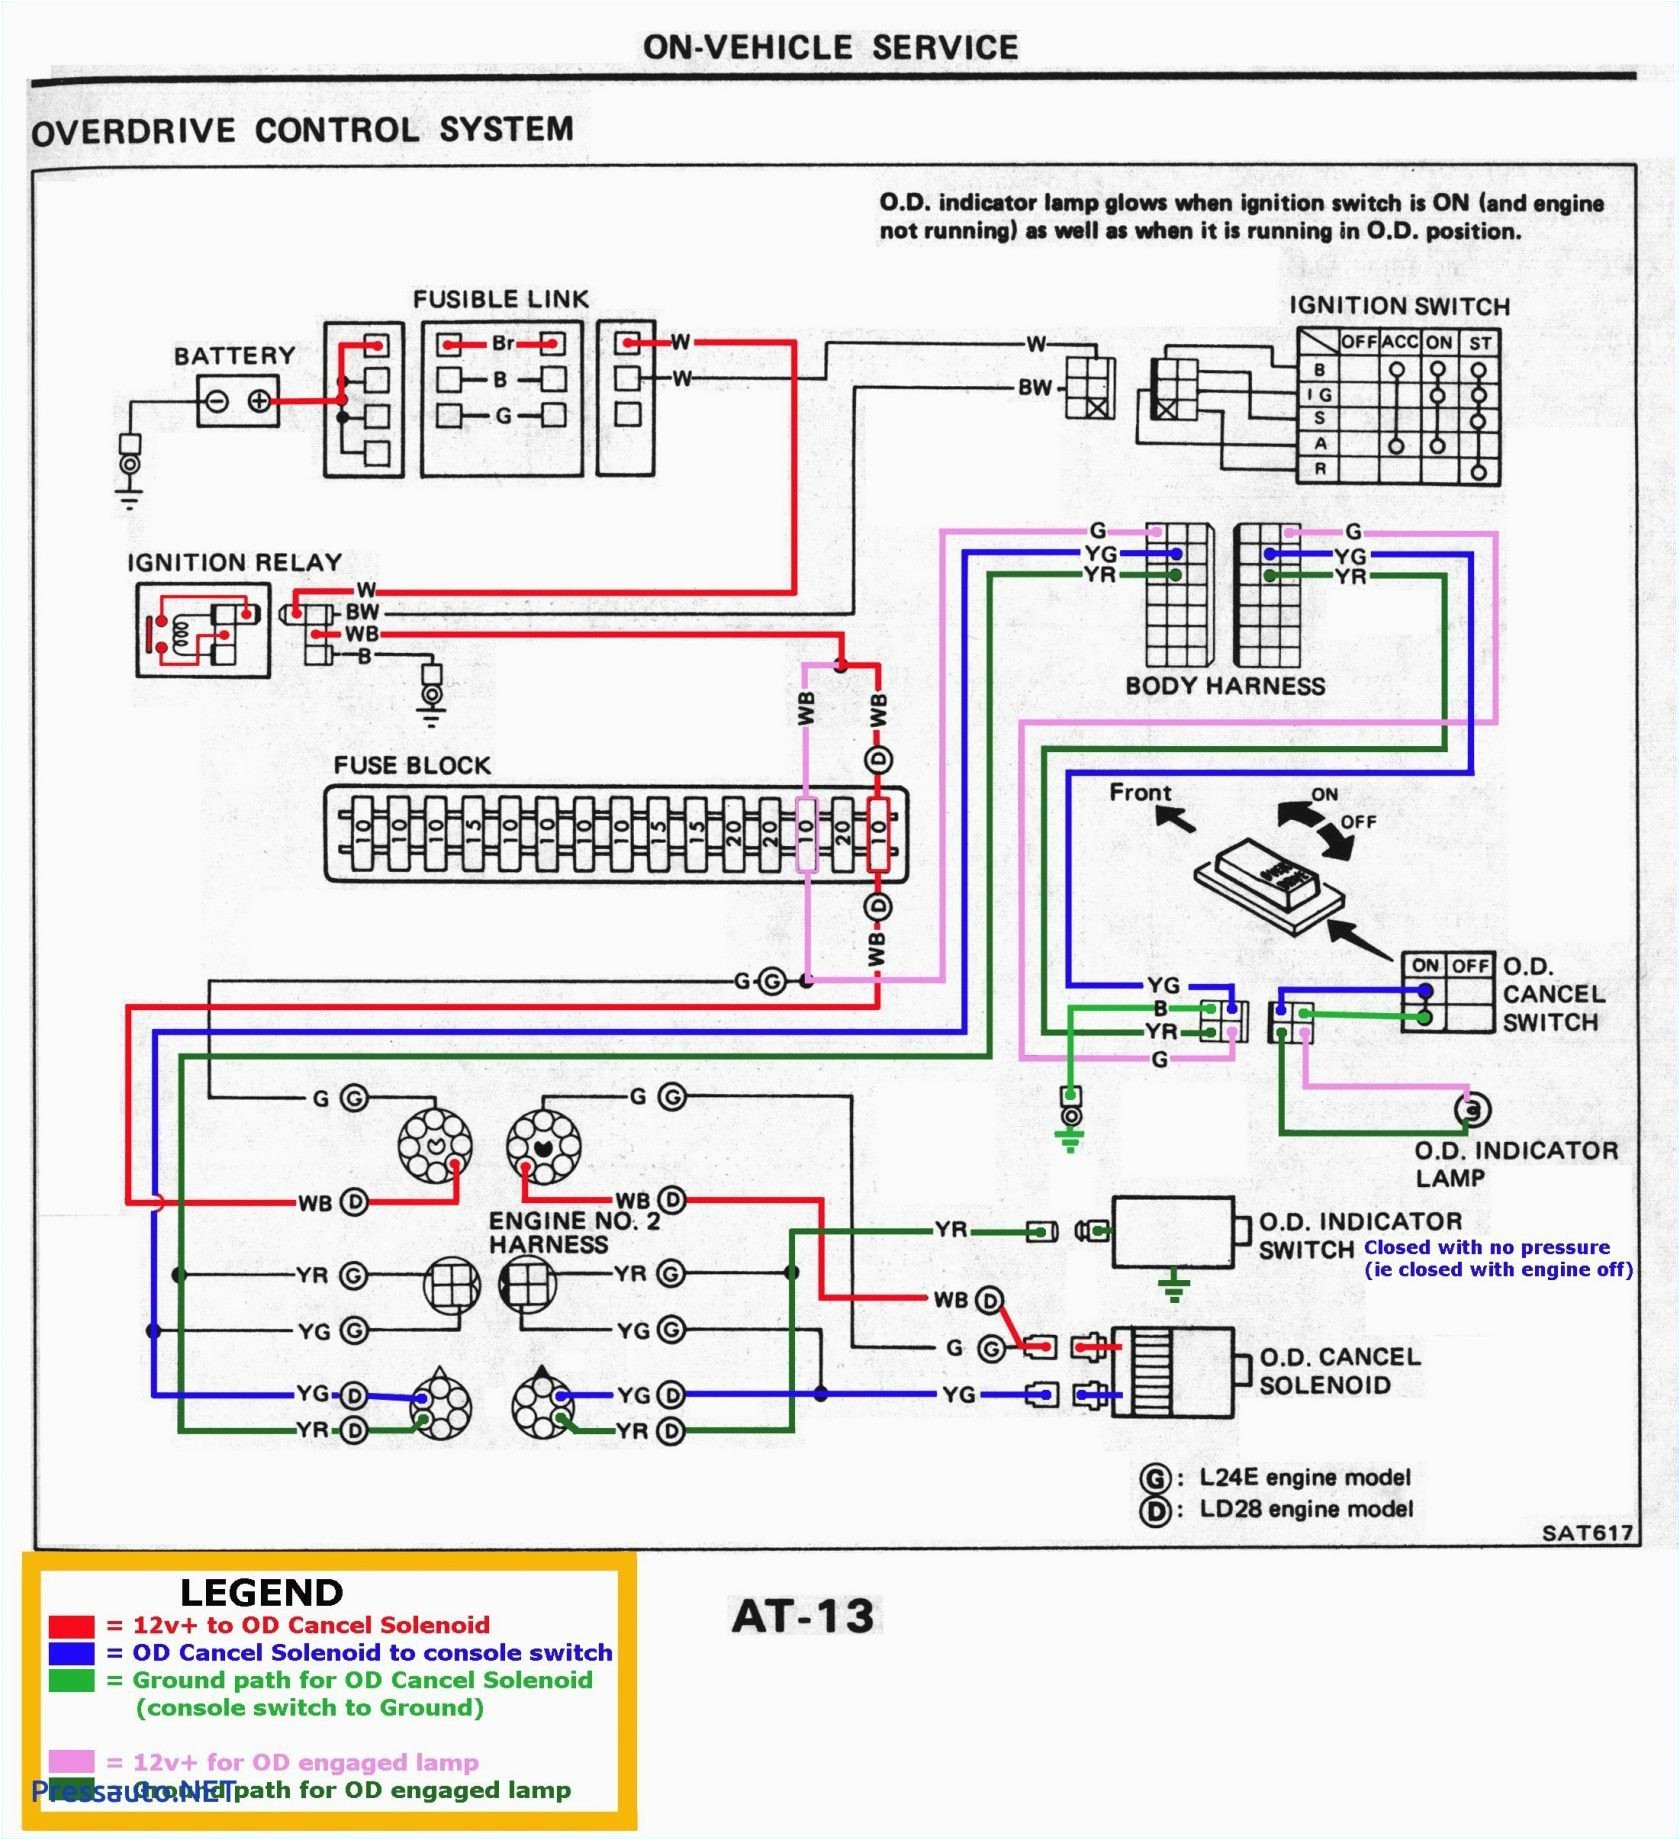 wiring diagram guitar gk007m wiring diagram blog wiring diagram albatross gk007m schema diagram database wiring diagram